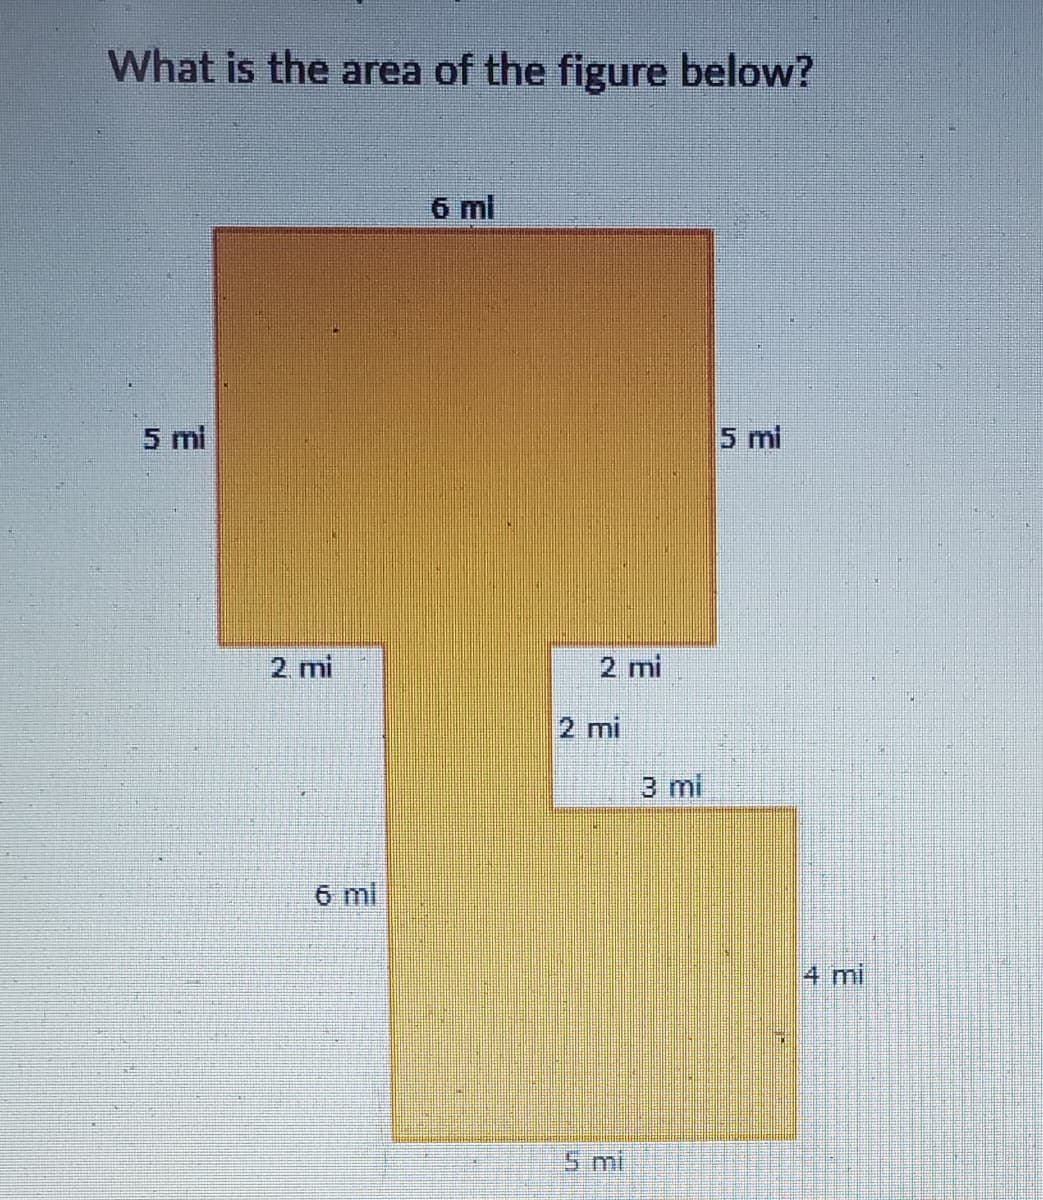 What is the area of the figure below?
5 mi
2 mi
6 ml
6 mi
2 mi
2 mi
3 mi
5 mi
4 mi